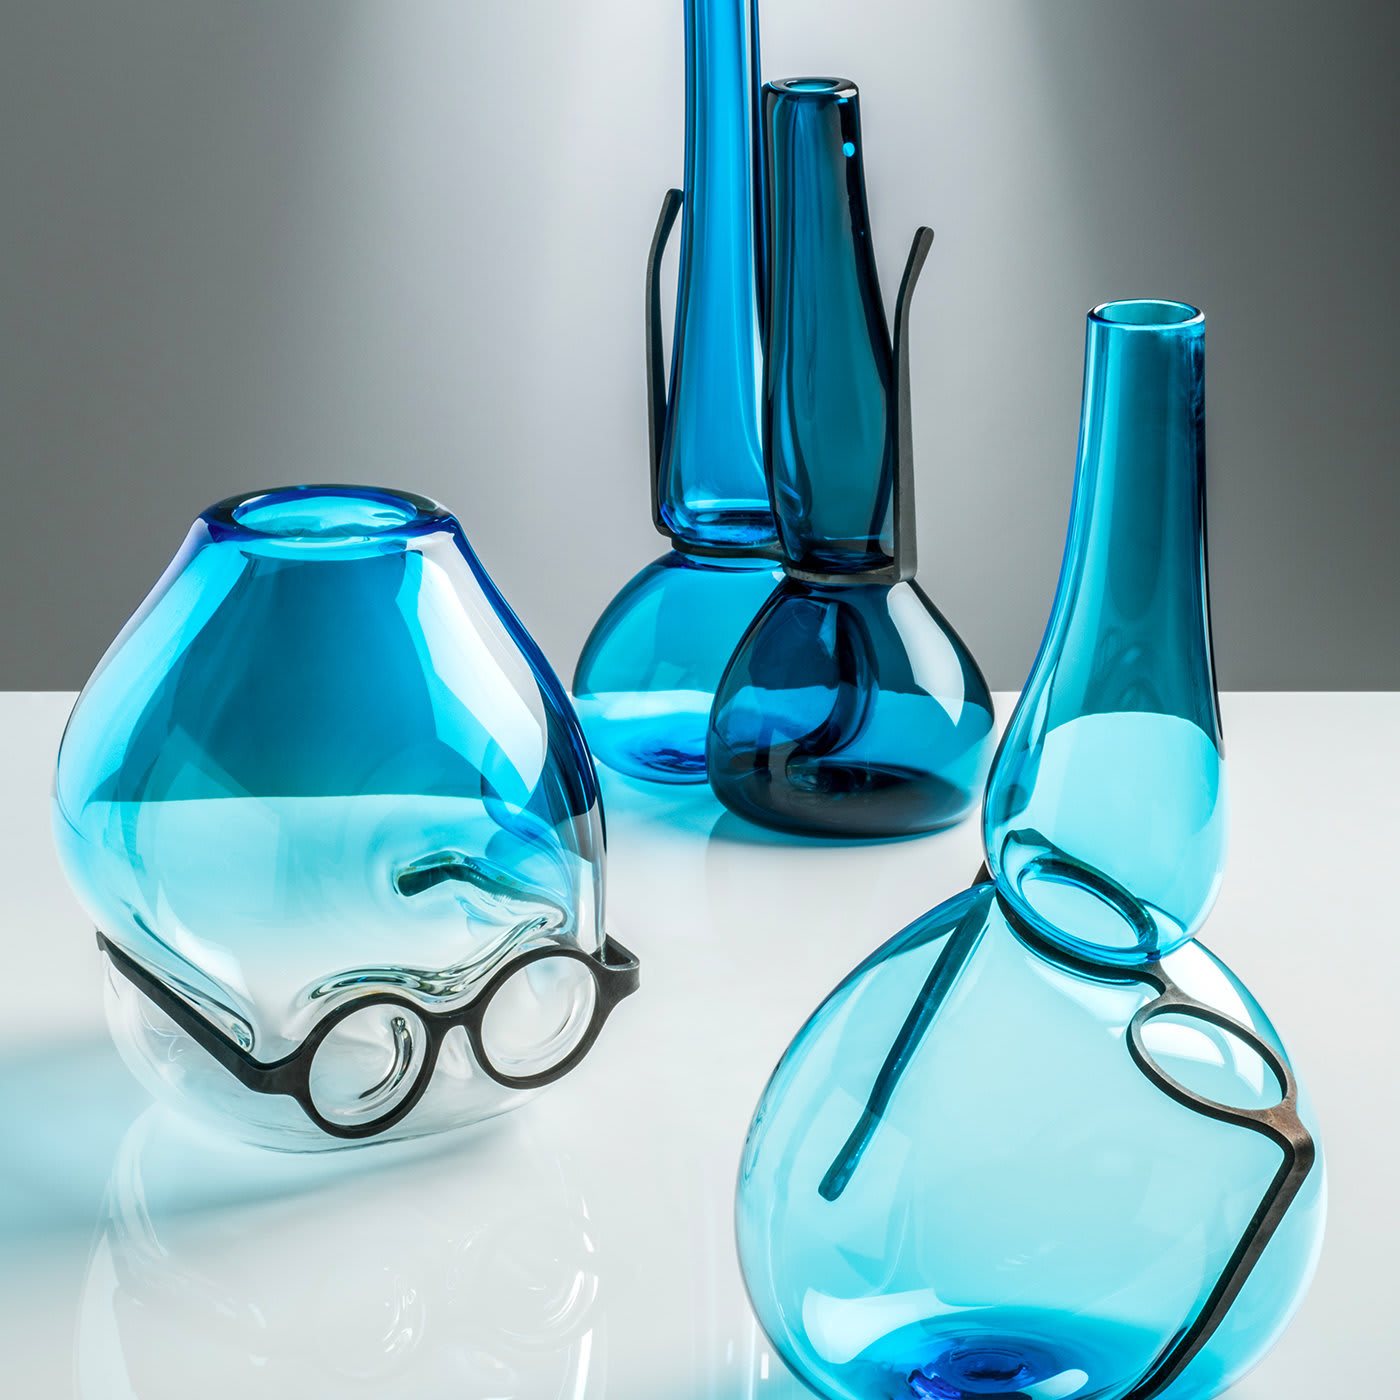 Where Are My Glasses? Under Vase by Ron Arad Studio # 1 - Venini